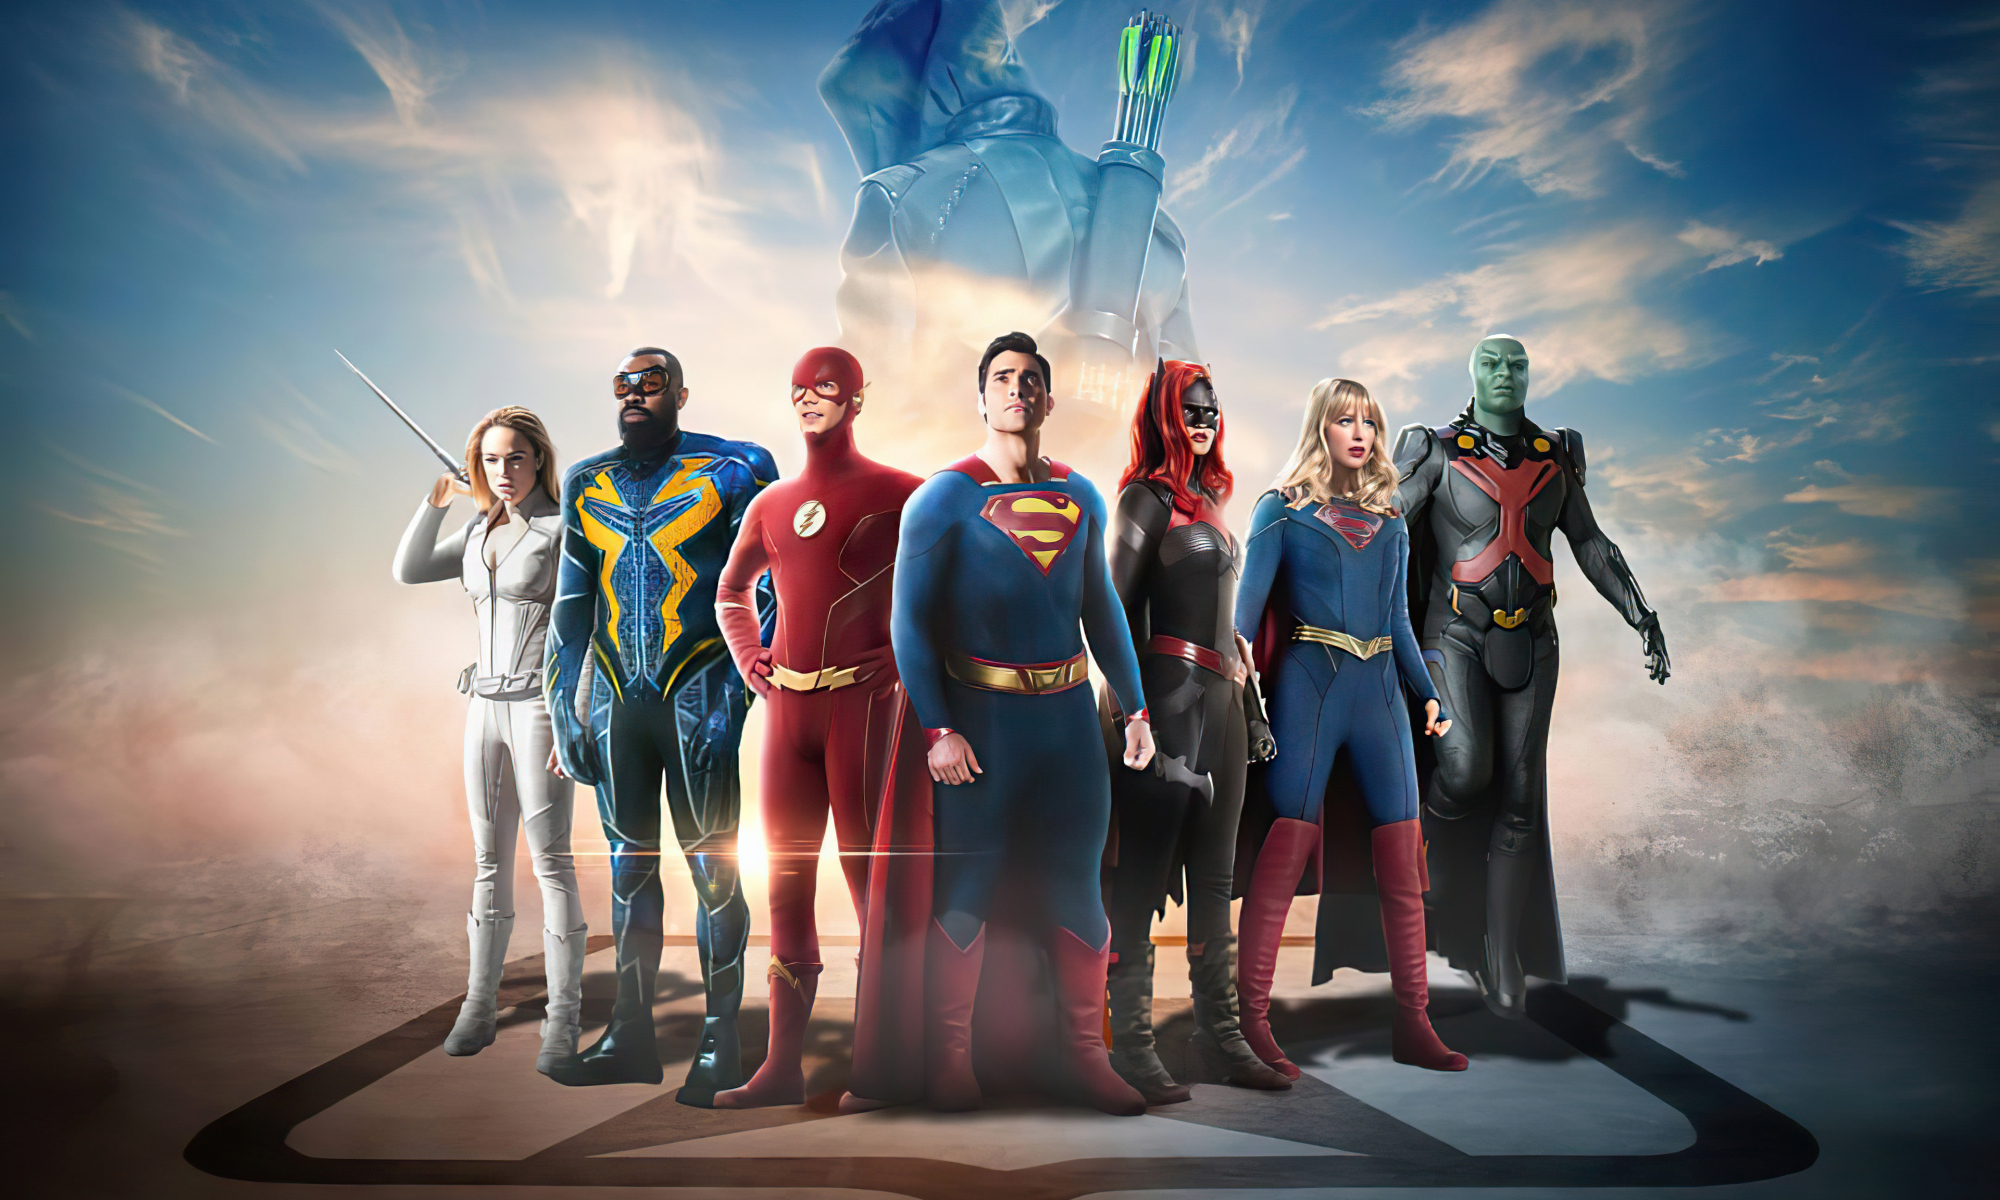 《闪电侠》CW电视台被收购 预计2025年实现盈利